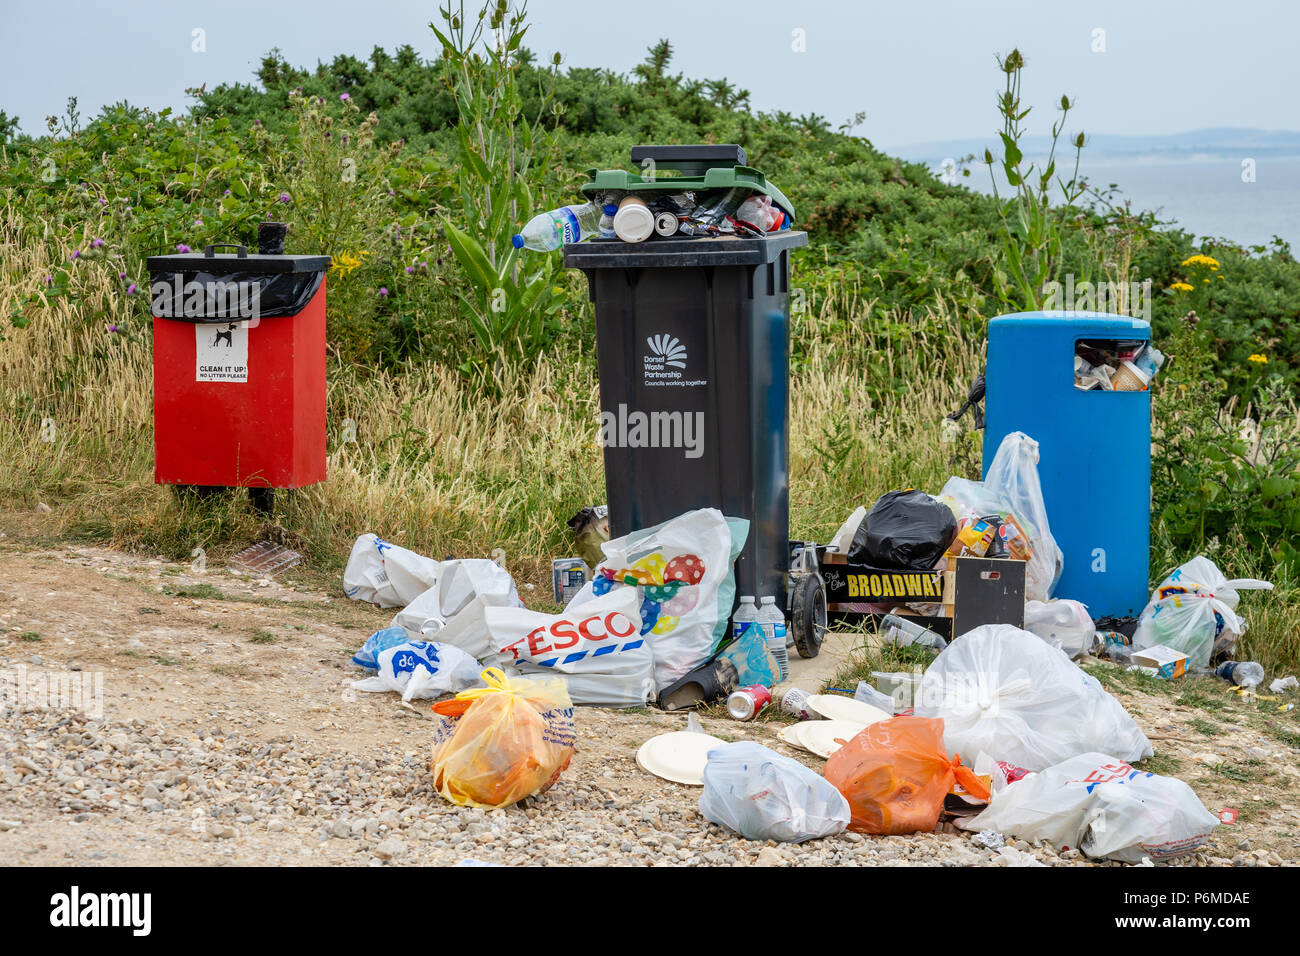 Highcliffe, Großbritannien. Juli 2018. Während die Hitzewelle in Großbritannien anhält, haben die Strände an der Südküste dieses Wochenende eine hohe Besucherzahl gesehen, was zu mehr als normalem Müll und Müll an den Stränden führte. Hier sind überfließende Müll-/Abfalleimer am Highcliffe Beach, Dorset, England, UK. Stockfoto